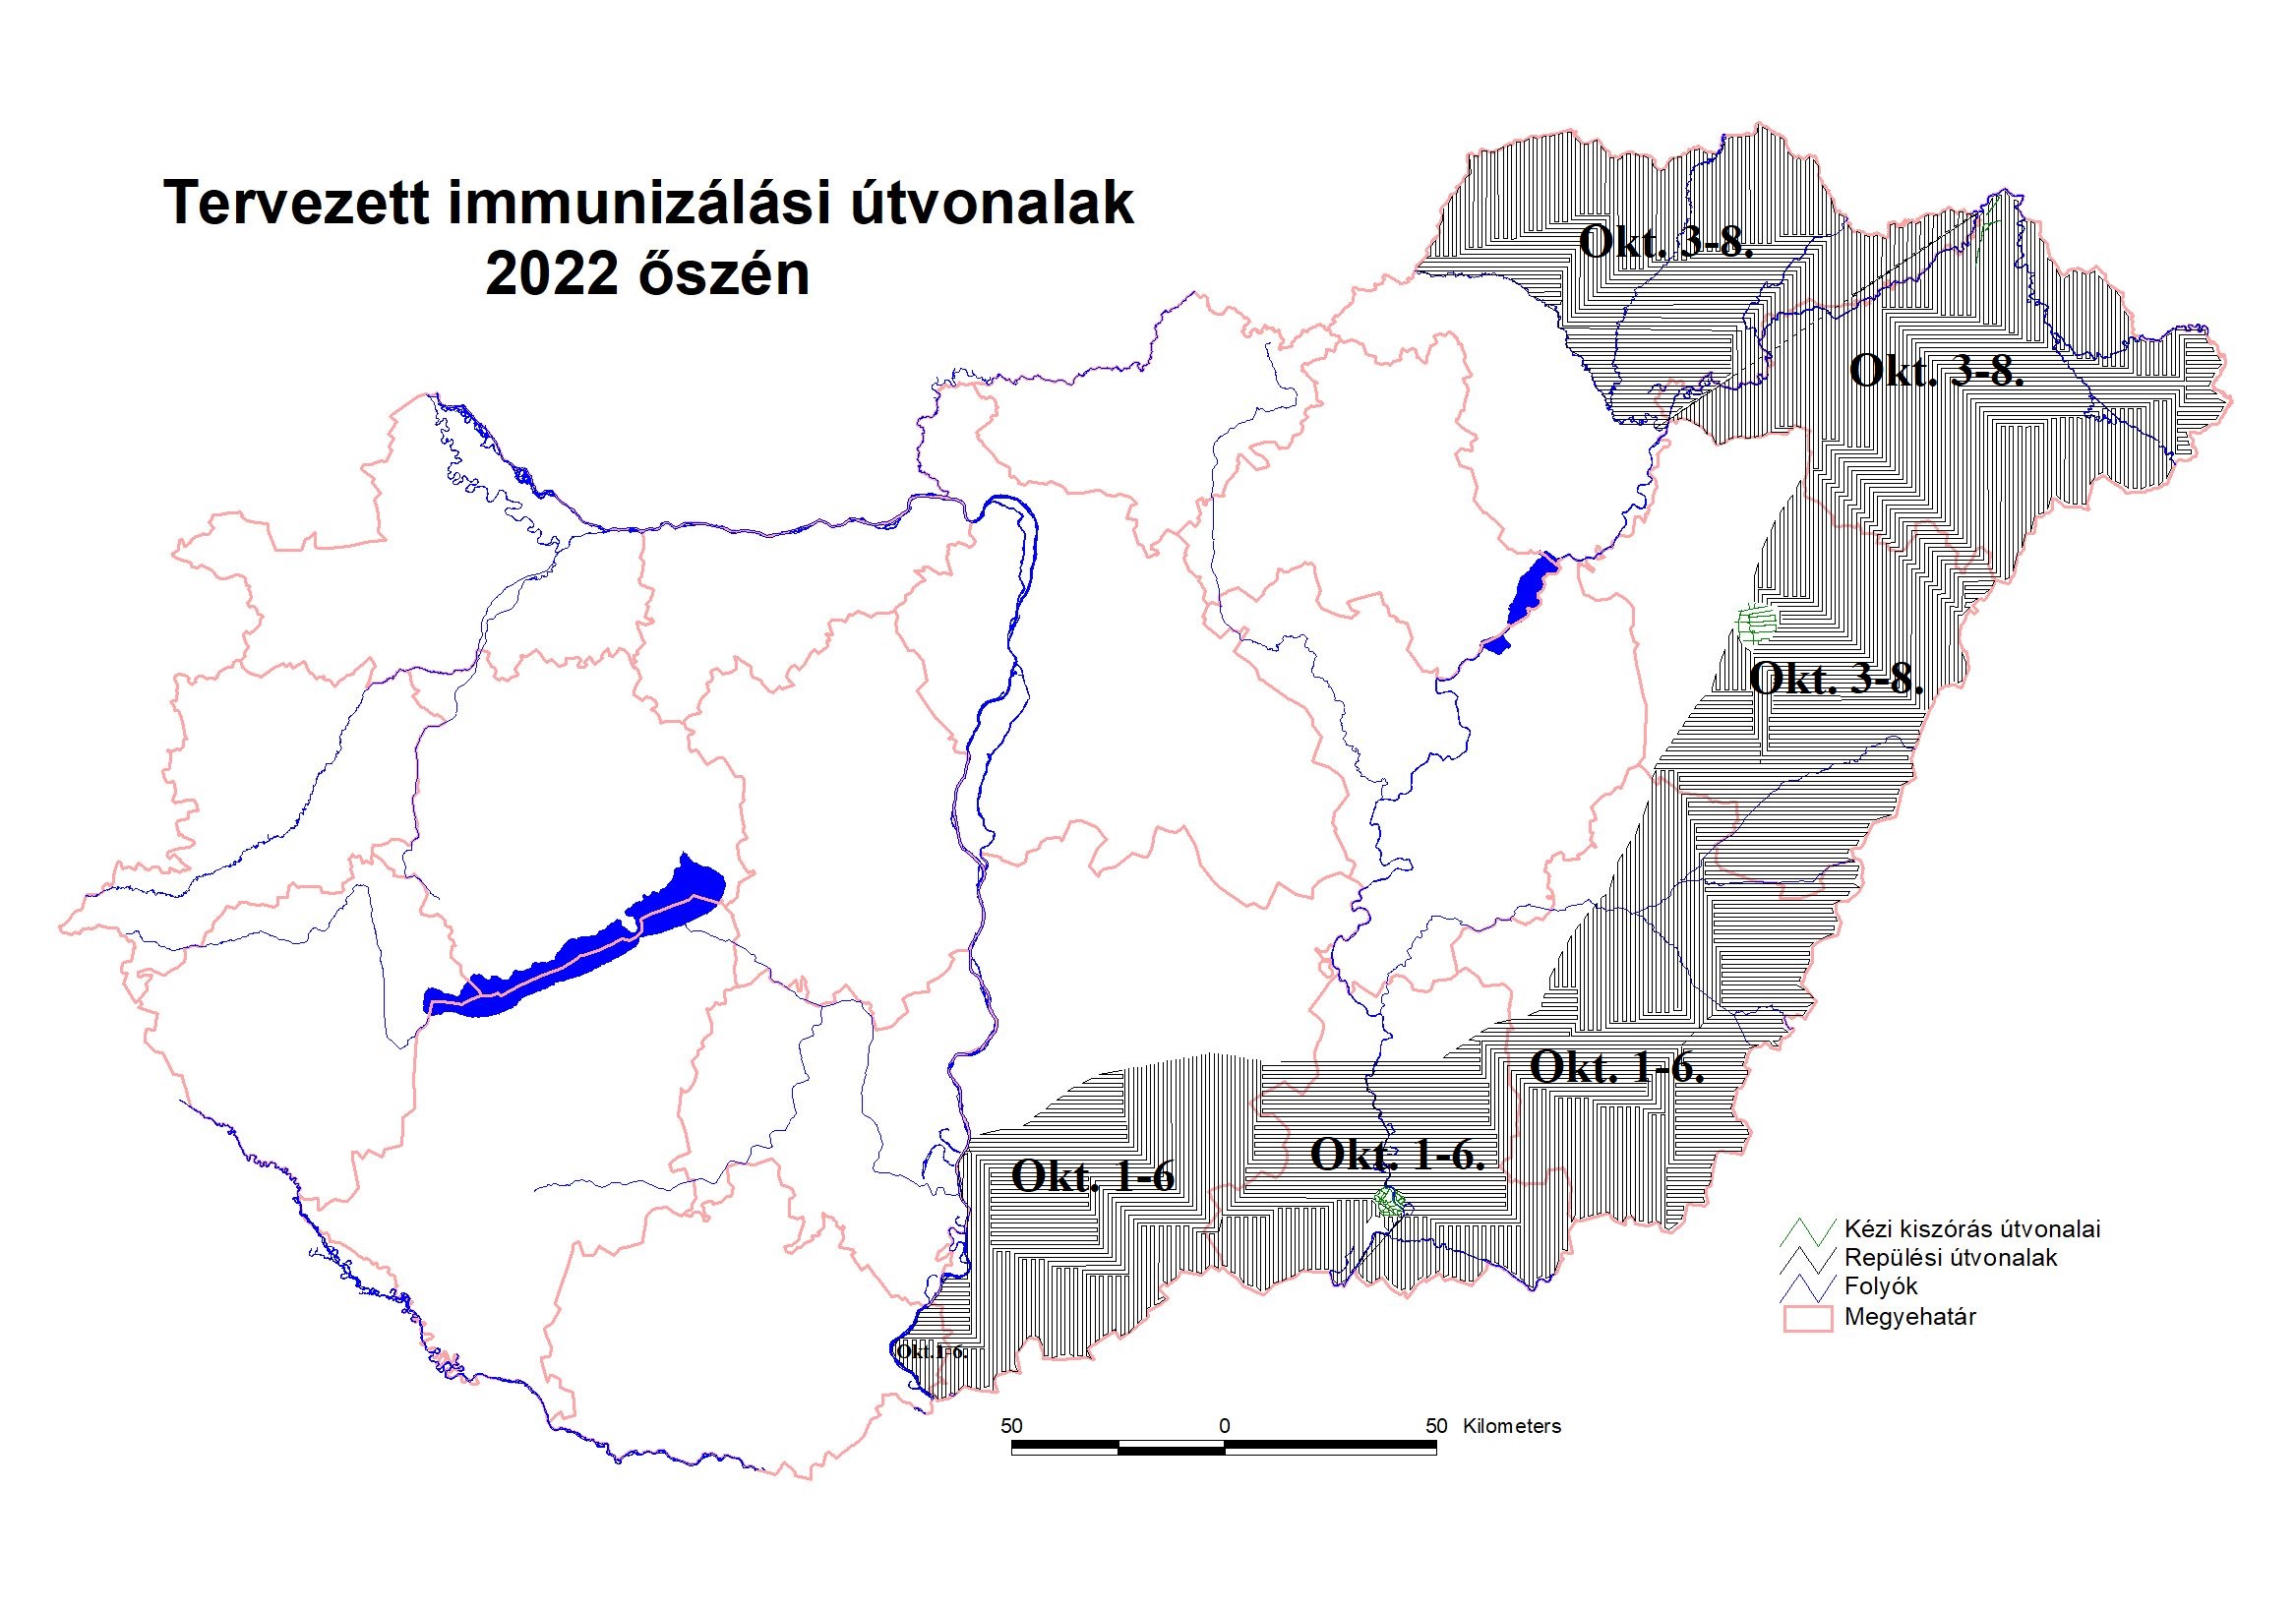 Rókavakcinázás - tervezett immunizálási útvonalak, 2022 ősz